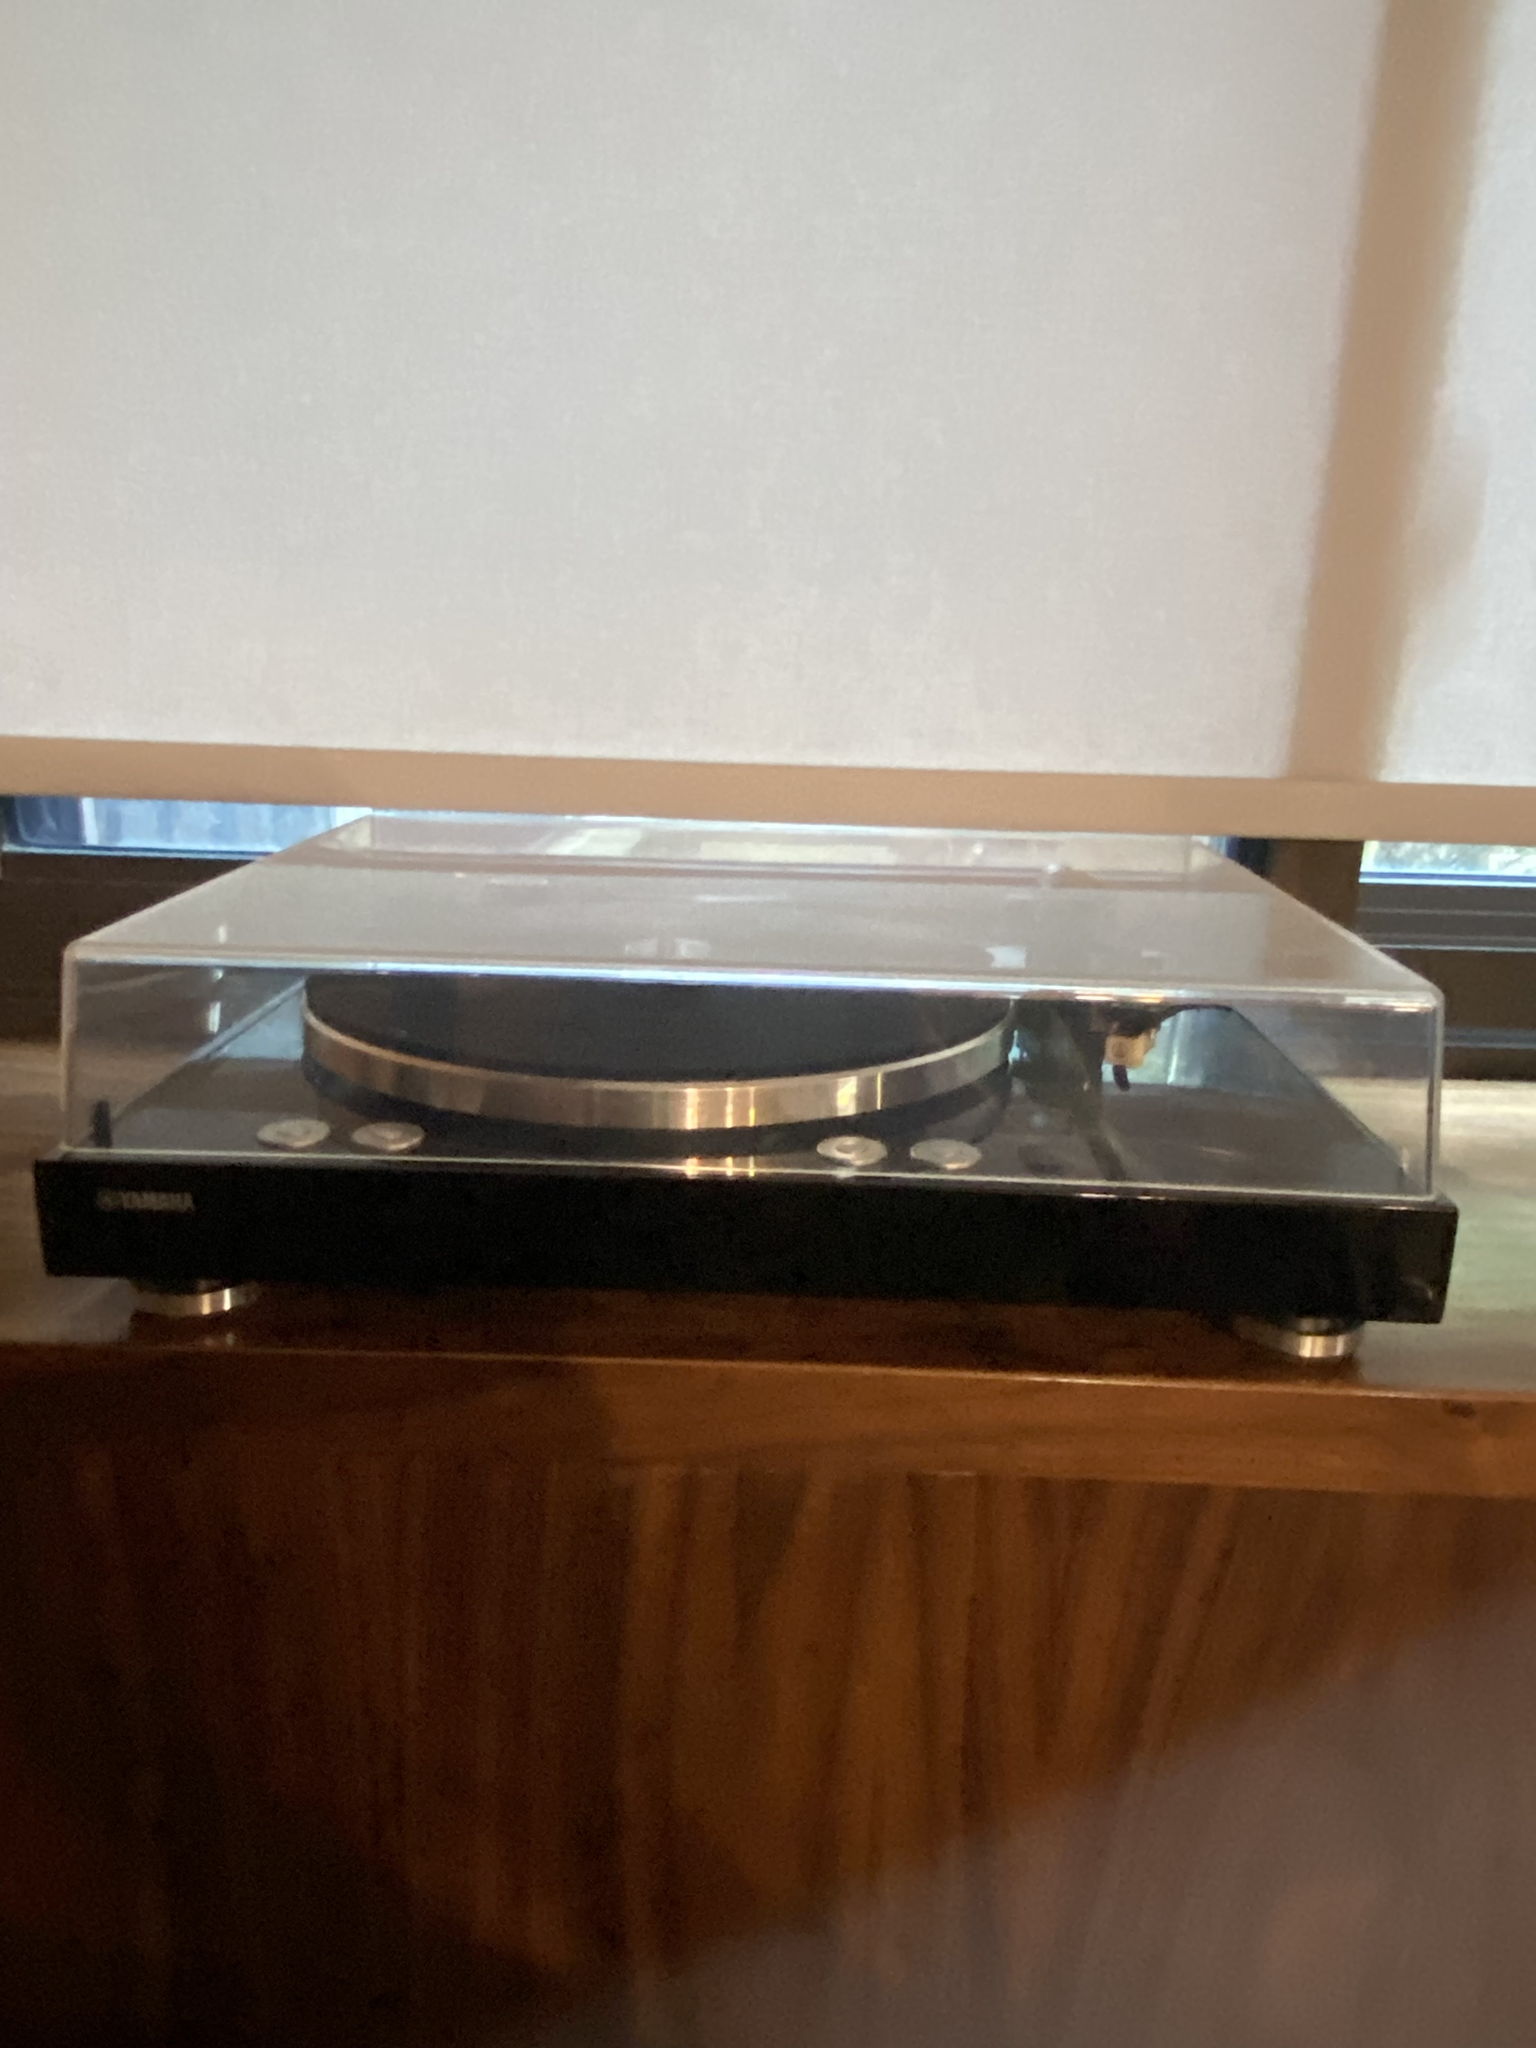 Yamaha MusicCast Vinyl TT-N503